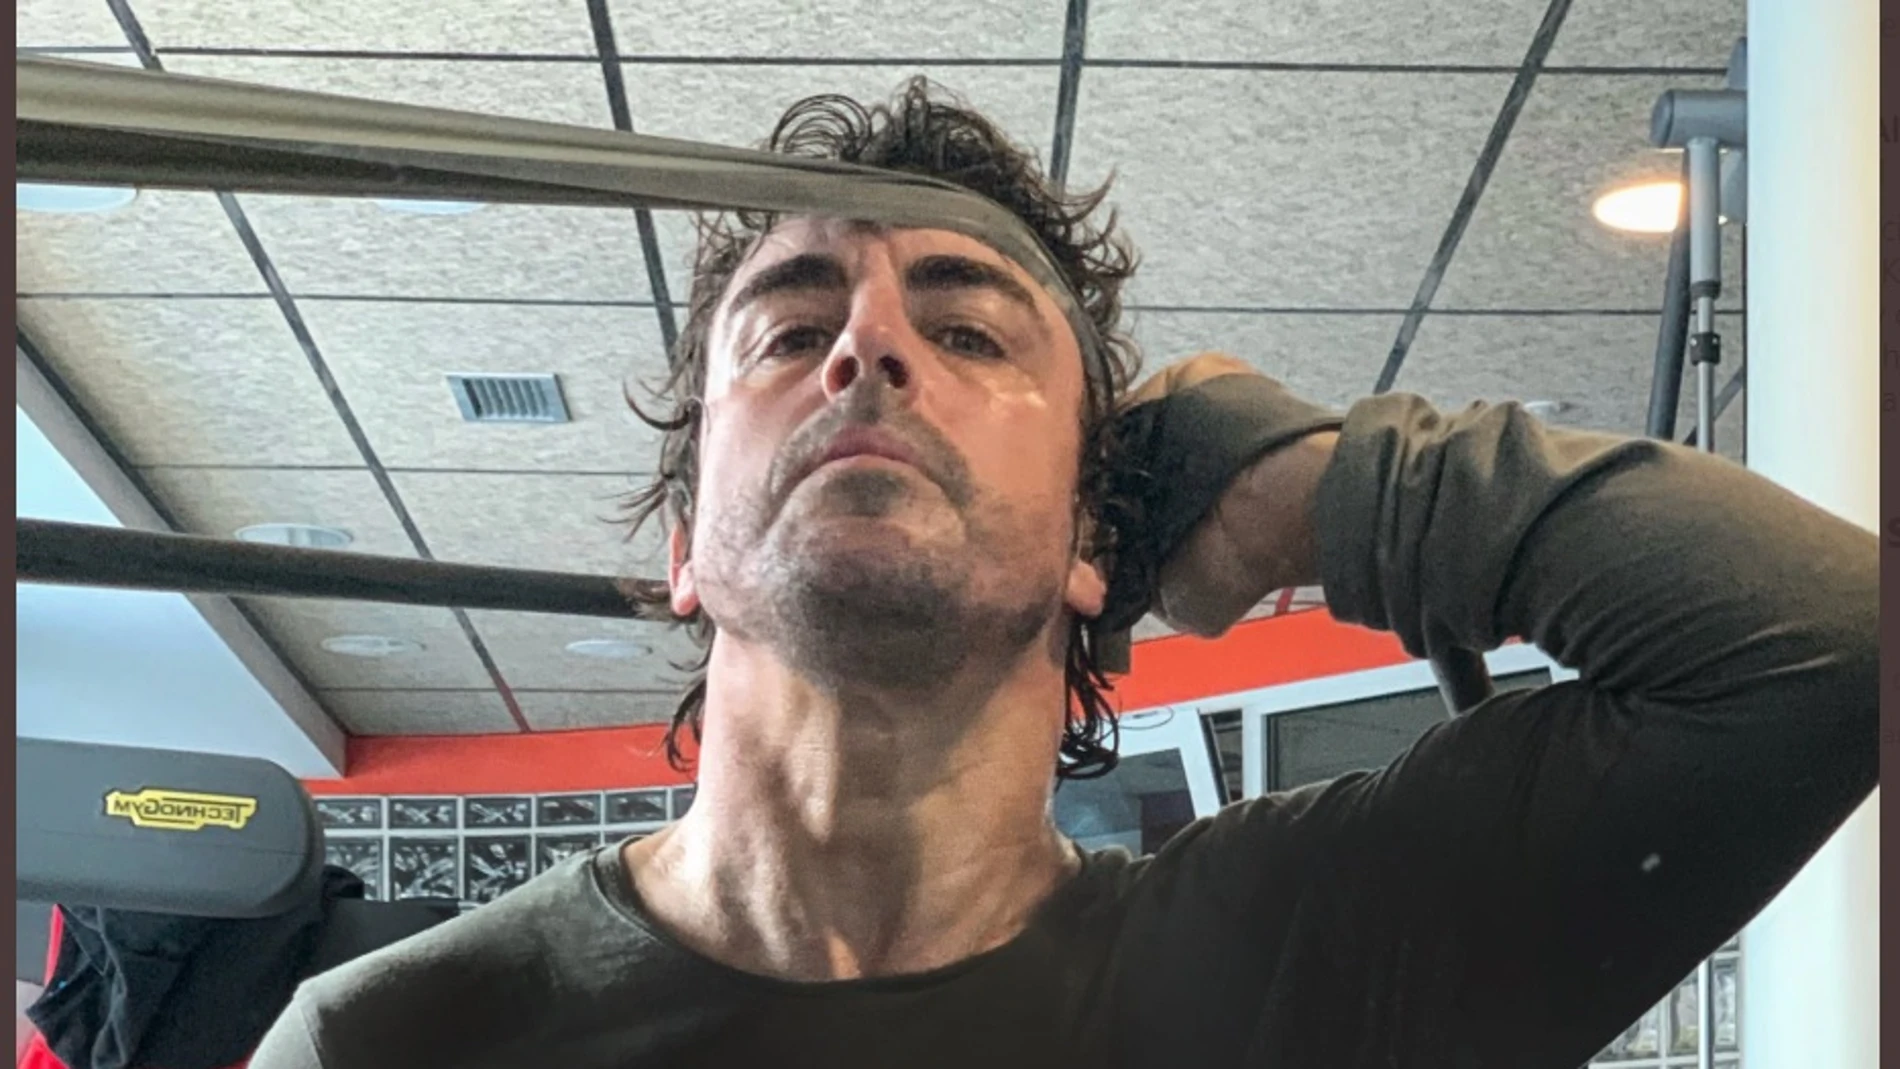 Fernando Alonso entrenando en el gimnasio